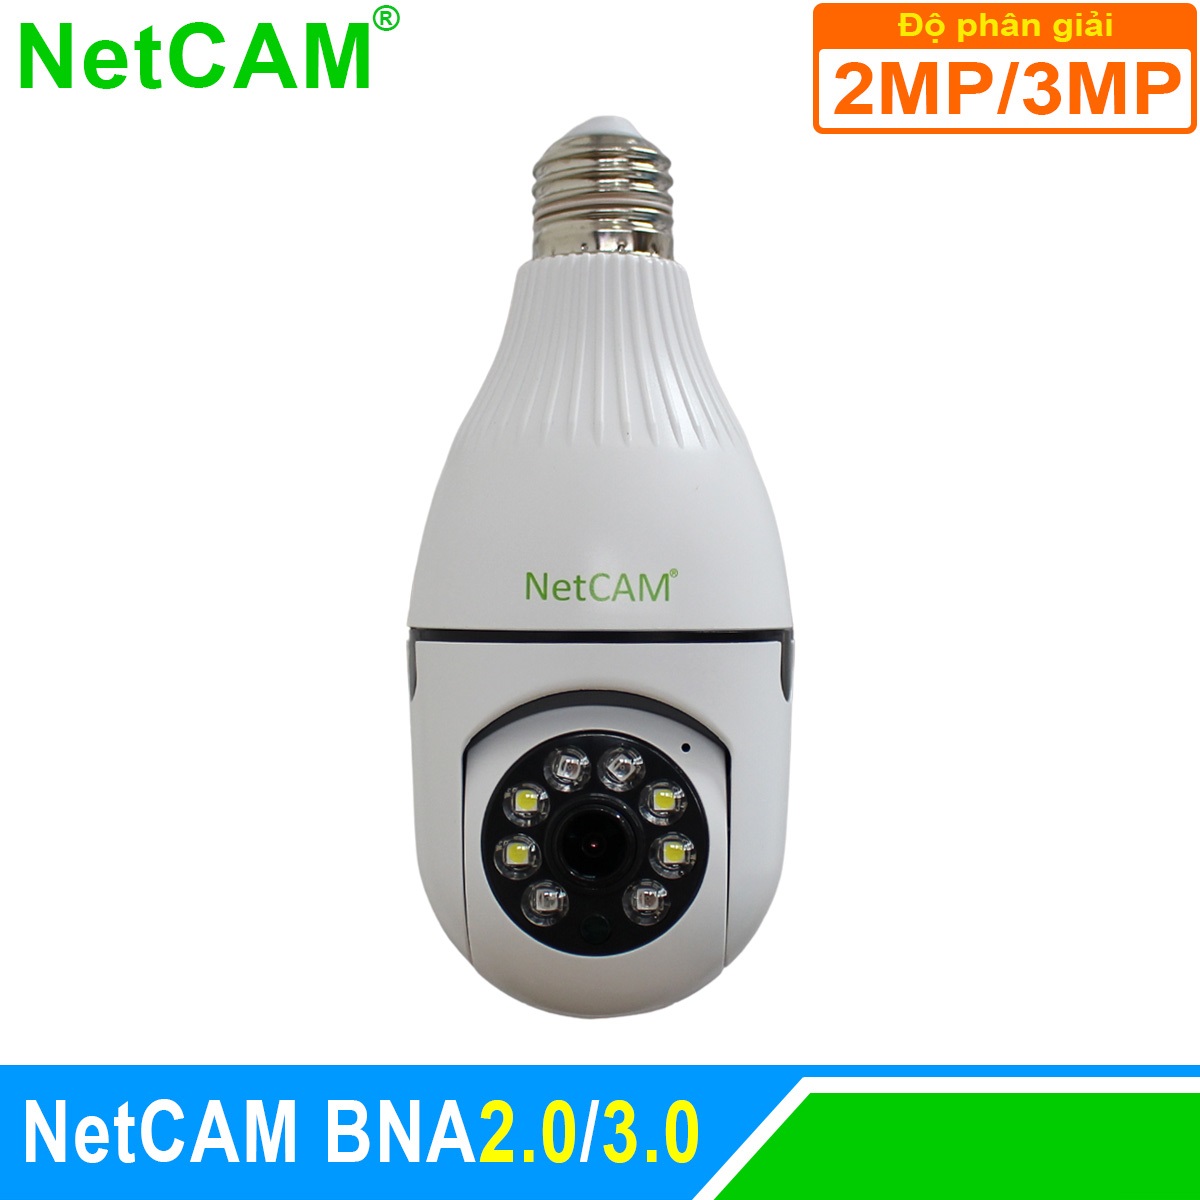 Hình ảnh Camera IP WiFi Giám Sát An Ninh NetCAM BNA2.0 / BNA3.0, Quay quét 360 độ, Độ phân giải 2.0MP và 3.0MP - Hàng Chính Hãng